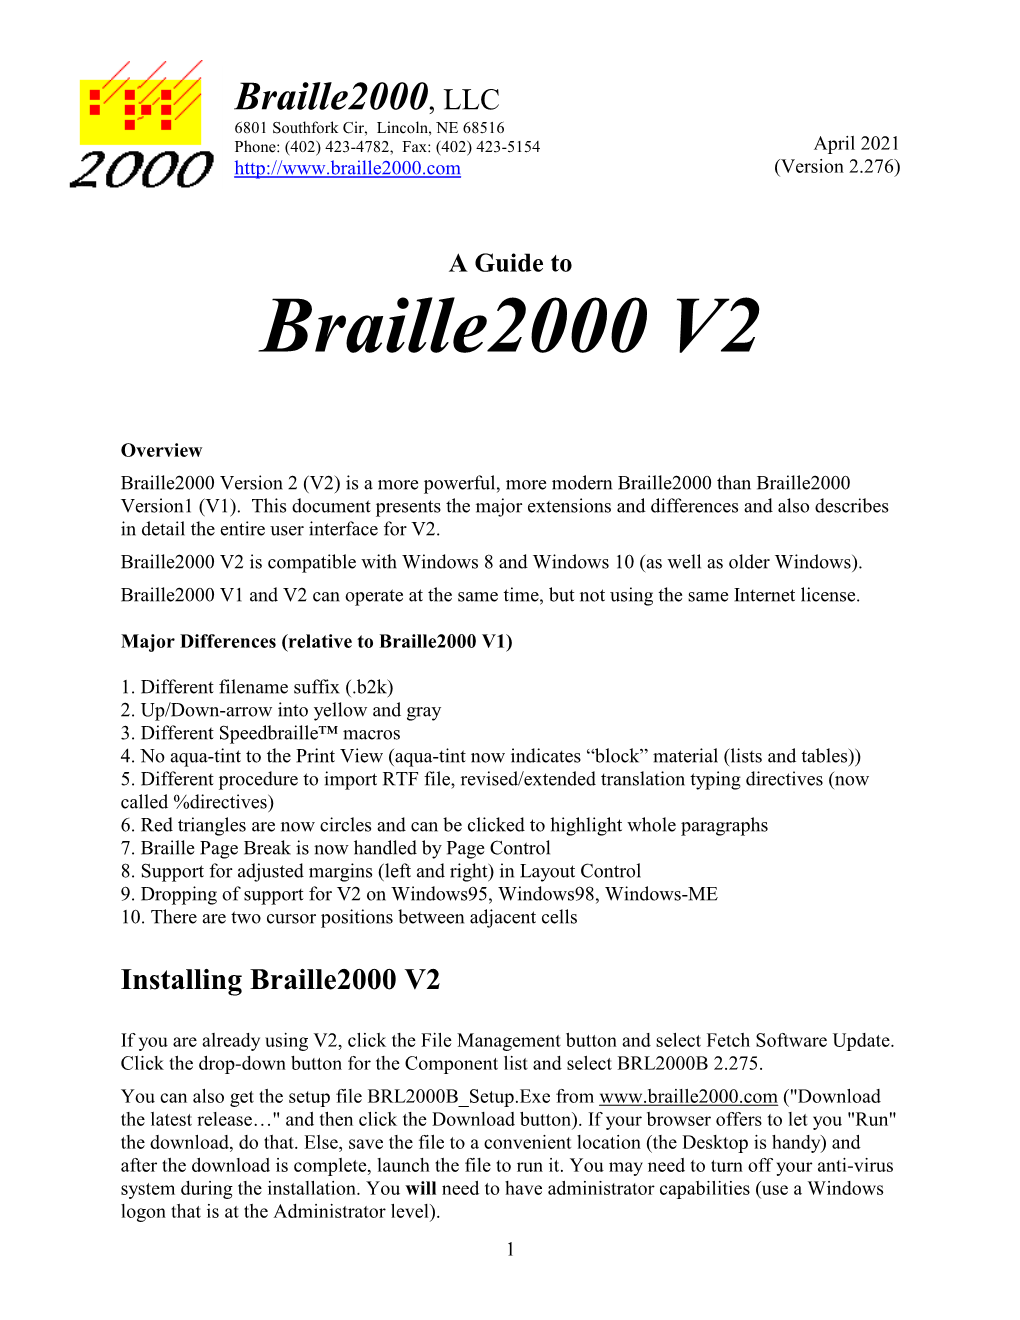 Using Braille2000 V2